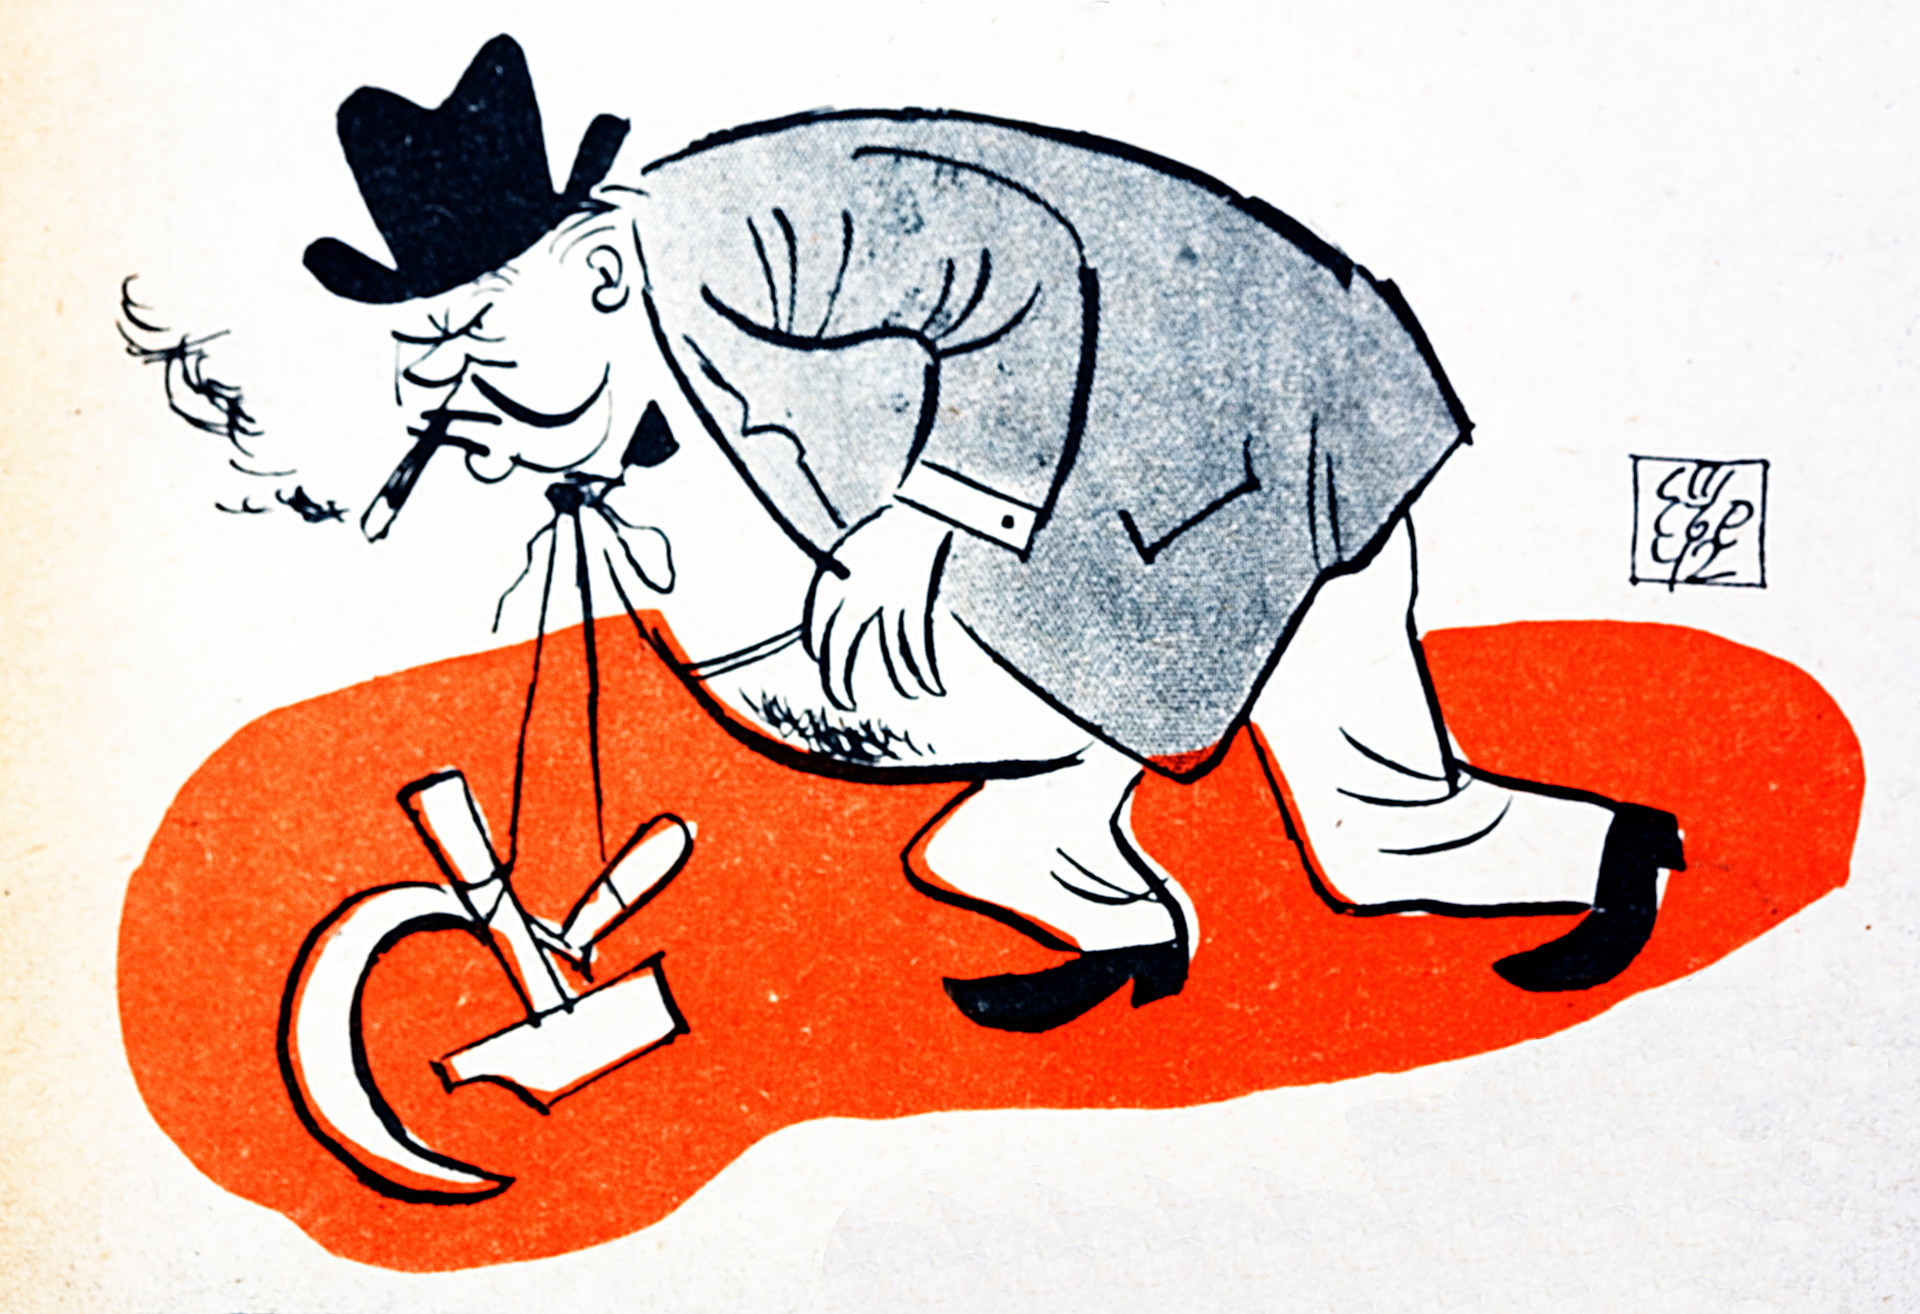 Карикатура Винстона Чечила са српом и чекићем око врата као симбол савеза са Русијом, преузета из бугарског пронацистичког пропагандистичког часописа из периода Другог светског рата, пре него што су Руси ослободили Бугарску 1944. године. 